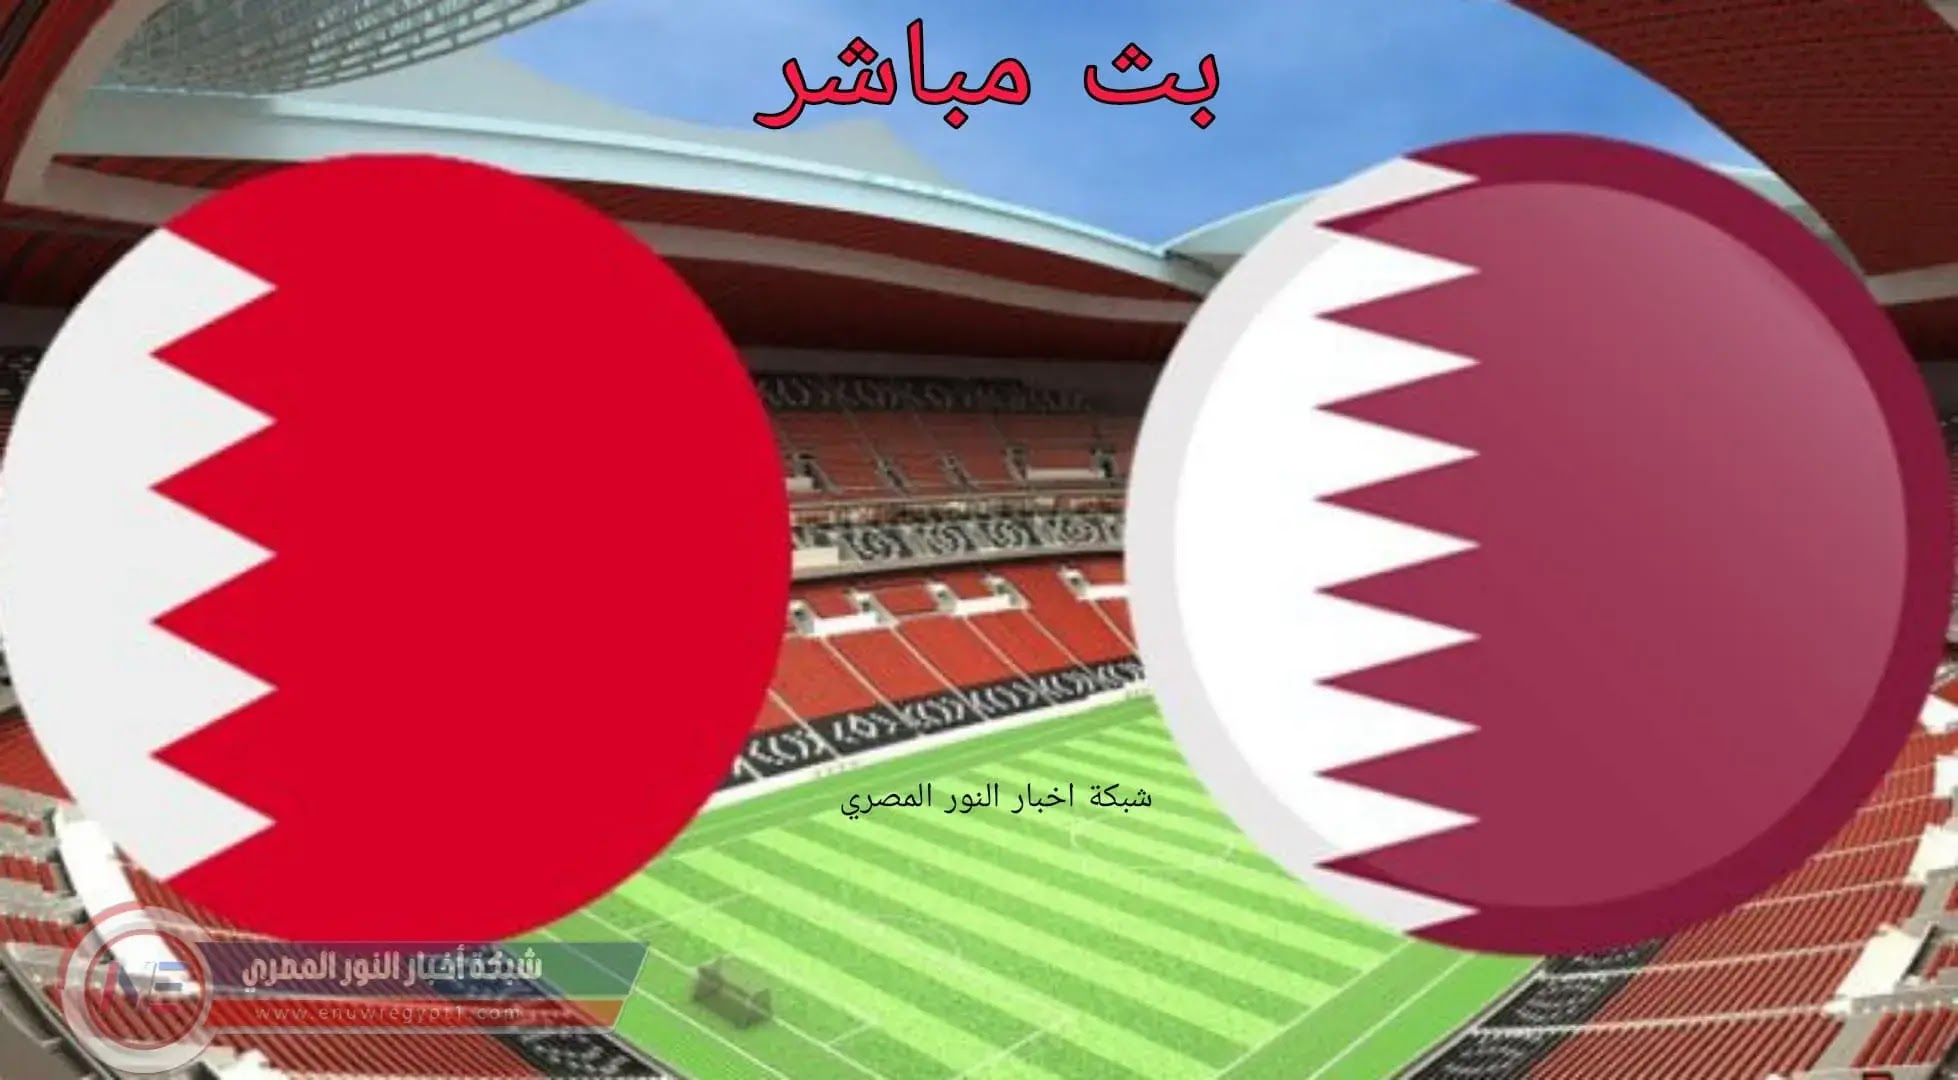 نتيجة مباراة قطر و البحرين بث مباشر بتاريخ اليوم 30-11-2021 في كأس العرب يلا كورة